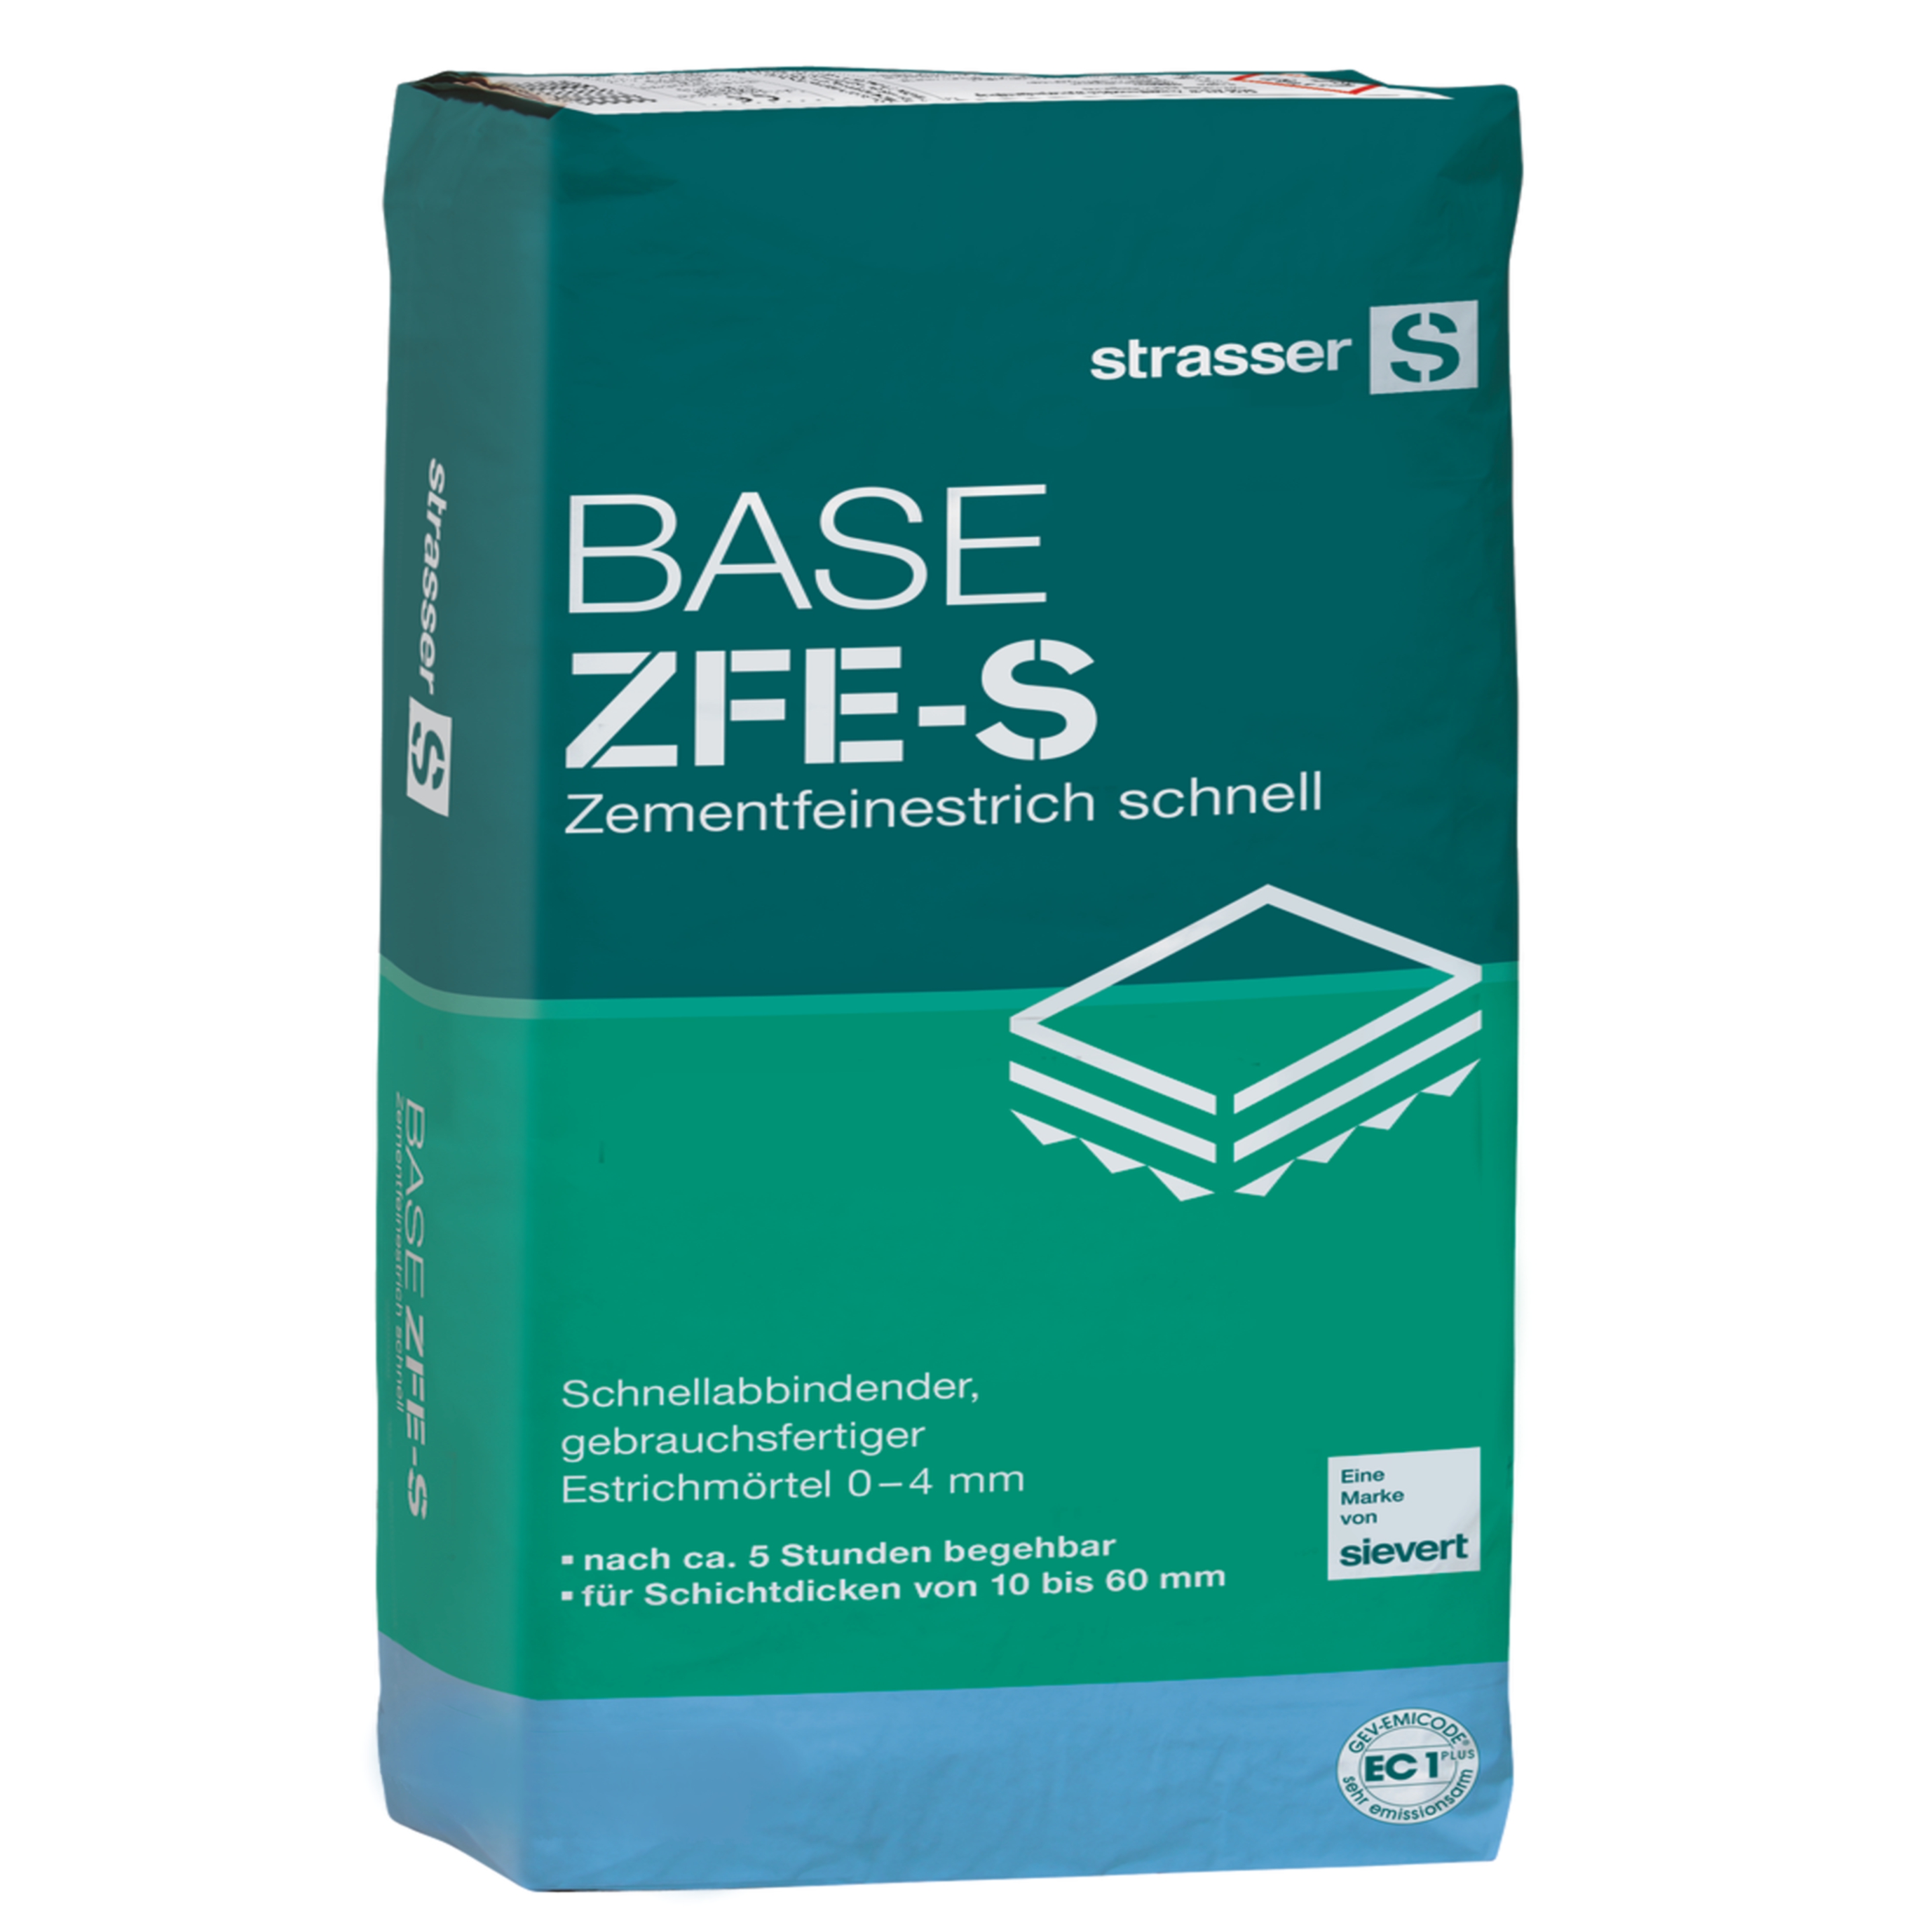 Strasser Base ZFE-S Zementfeinestrich schnell  lose in kg